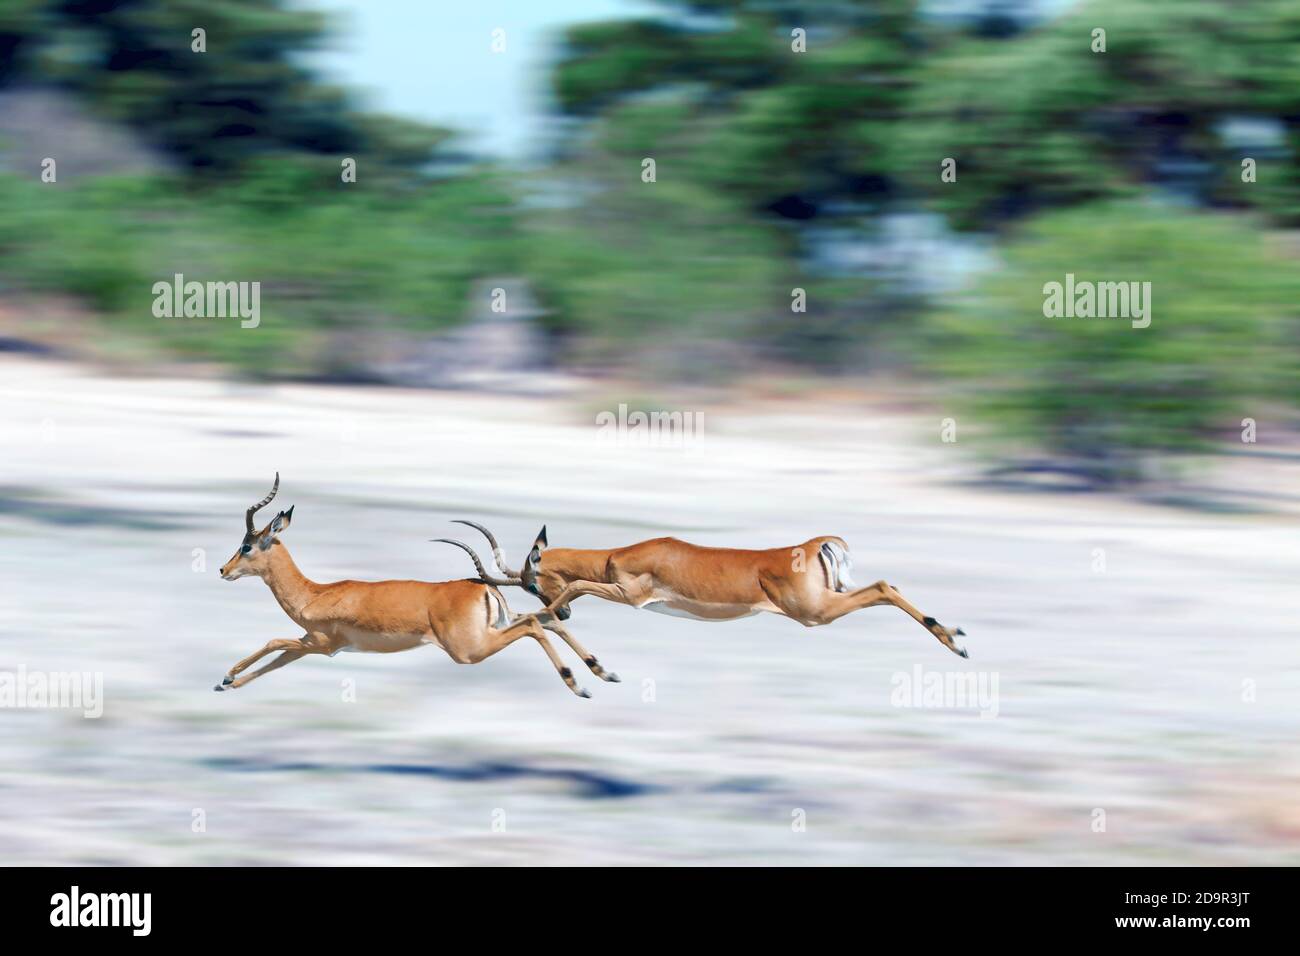 Los impalas son antílopes de tamaño medio que recorren las sabanas y los bosques ligeros del África oriental y meridional. Foto de stock